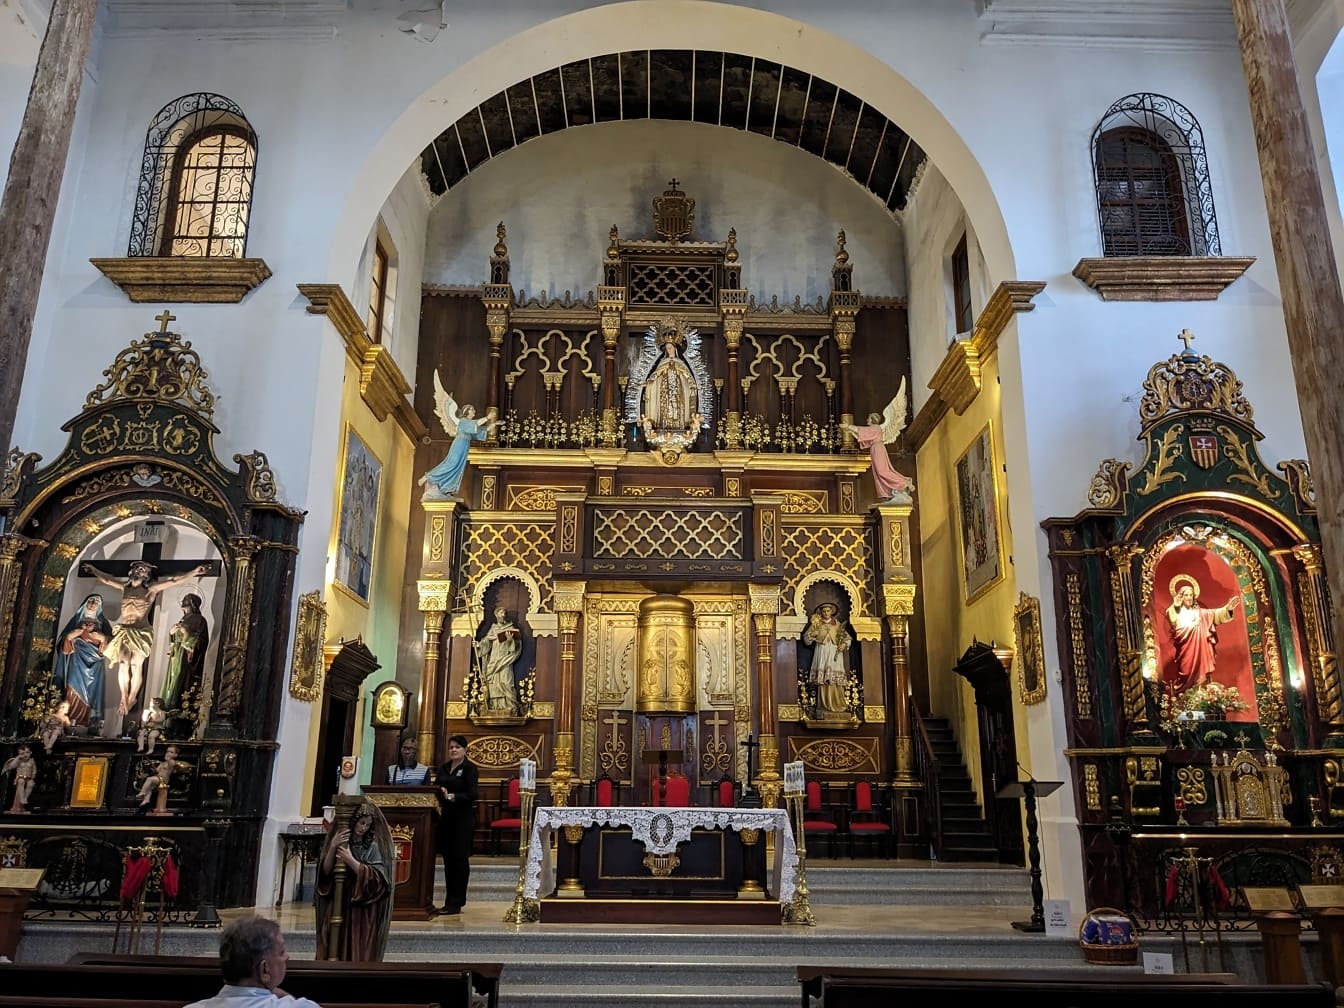 Wnętrze katolickiego kościoła Miłosierdzia z dużym ołtarzem